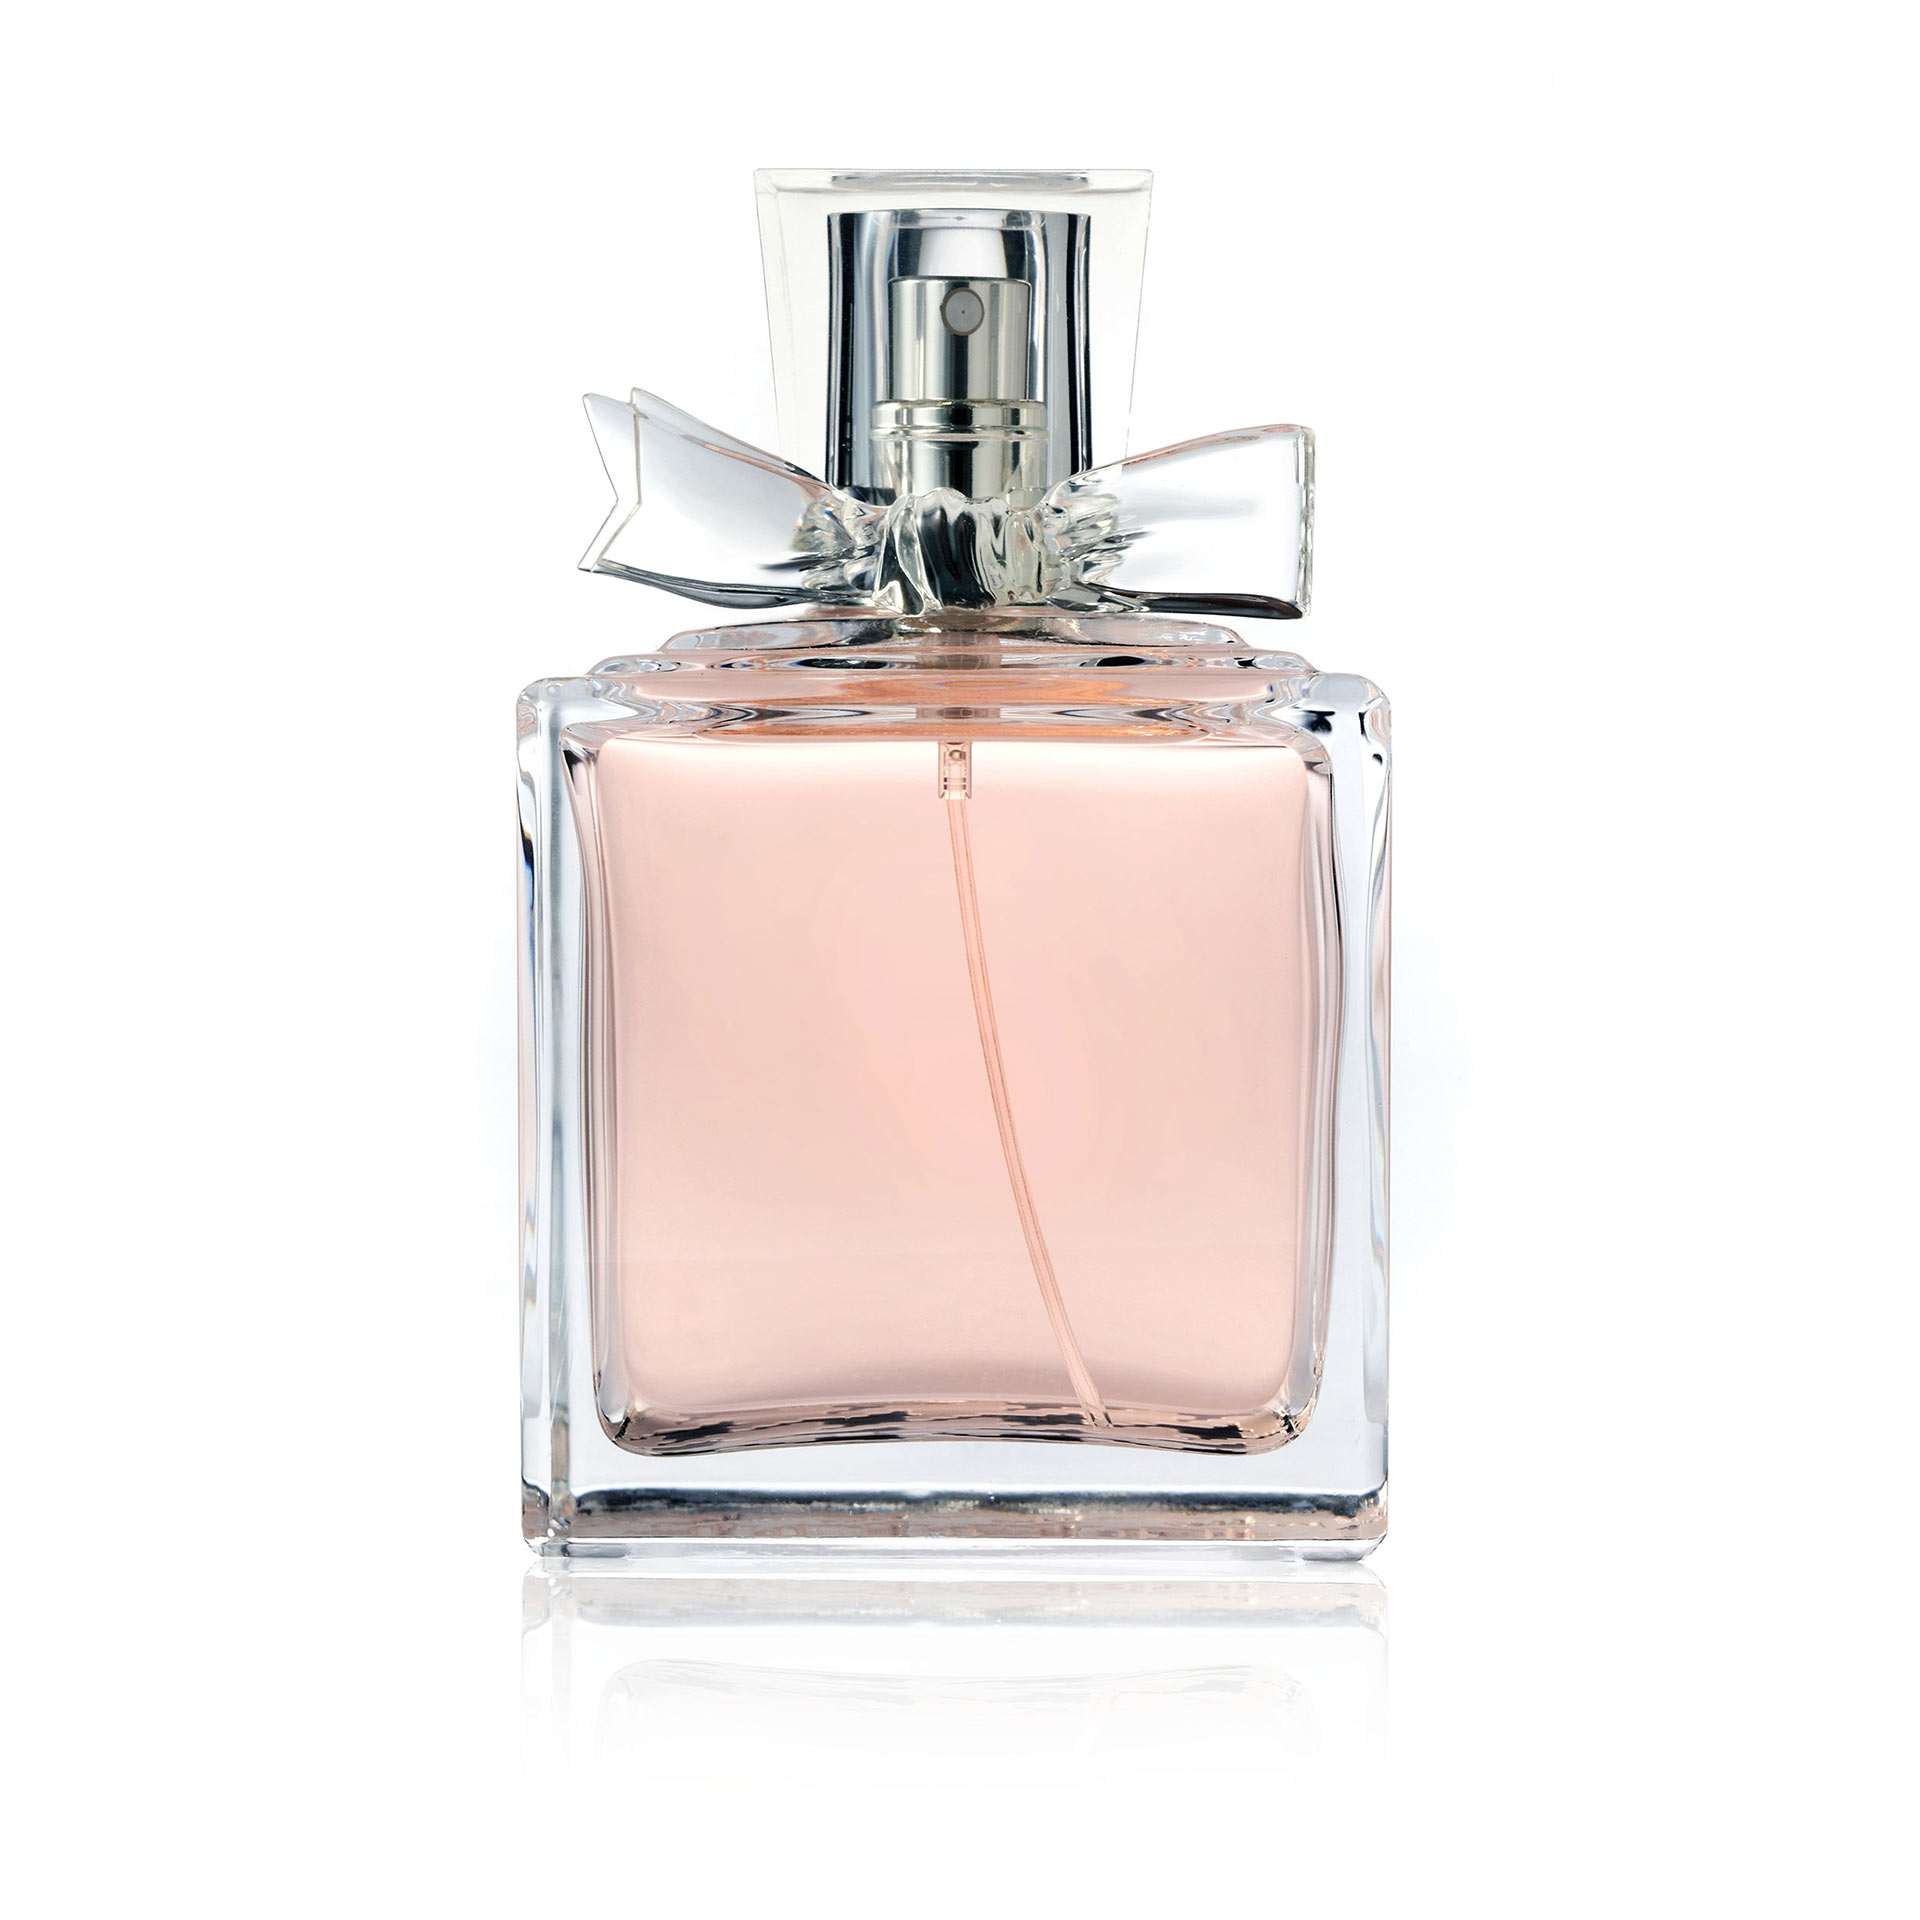 https://www.pickettbrothersjewelers.com/wp-content/uploads/2014/10/perfume-bottle.jpg